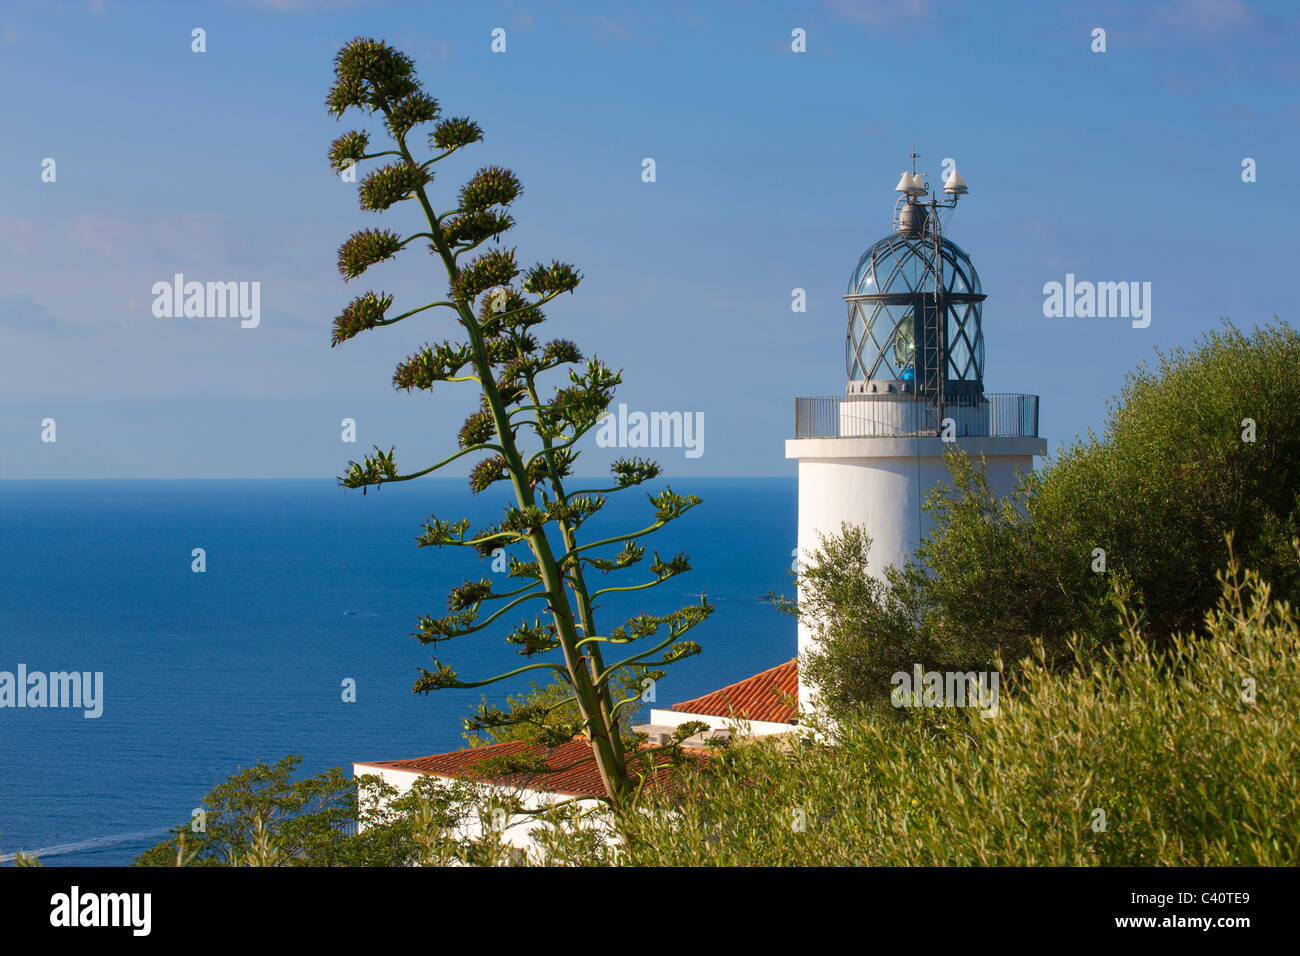 Cap de San Sebastia, Espagne, Europe, Catalogne, Costa Brava, mer, Mer Méditerranée, Côte, Lighthouse, agaves Banque D'Images